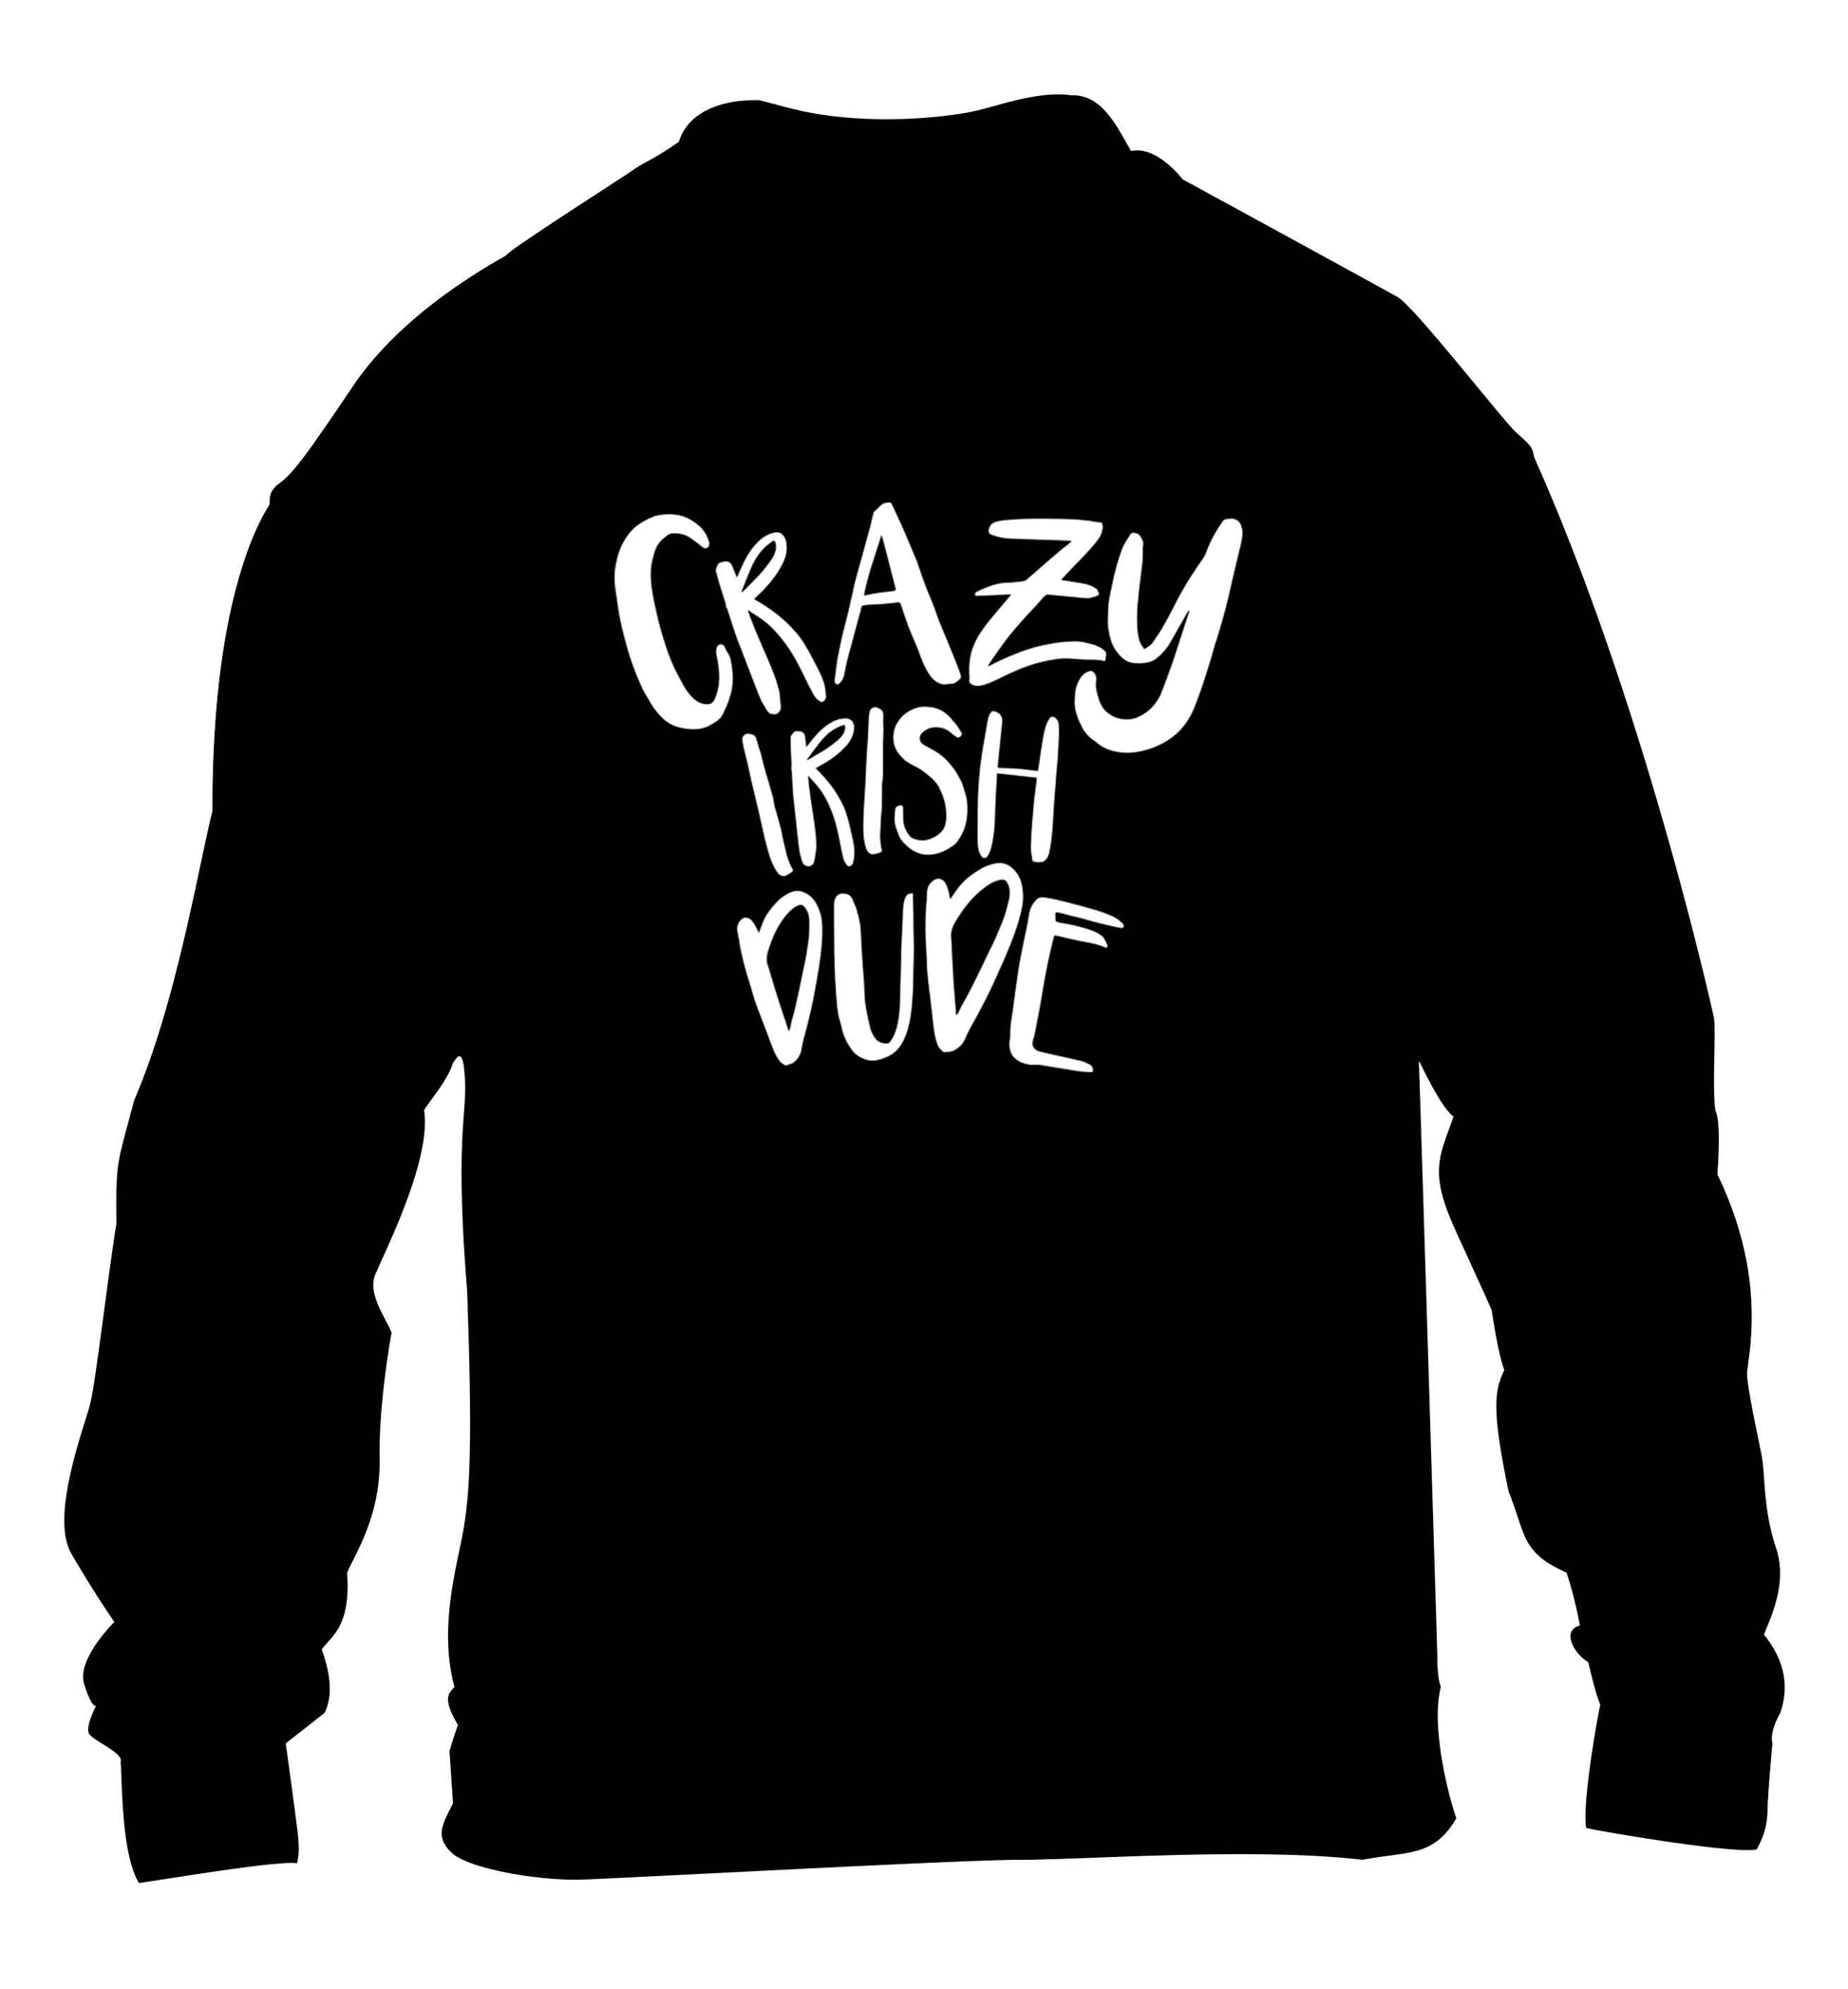 Crazy Irish dude children's black sweater 12-13 Years